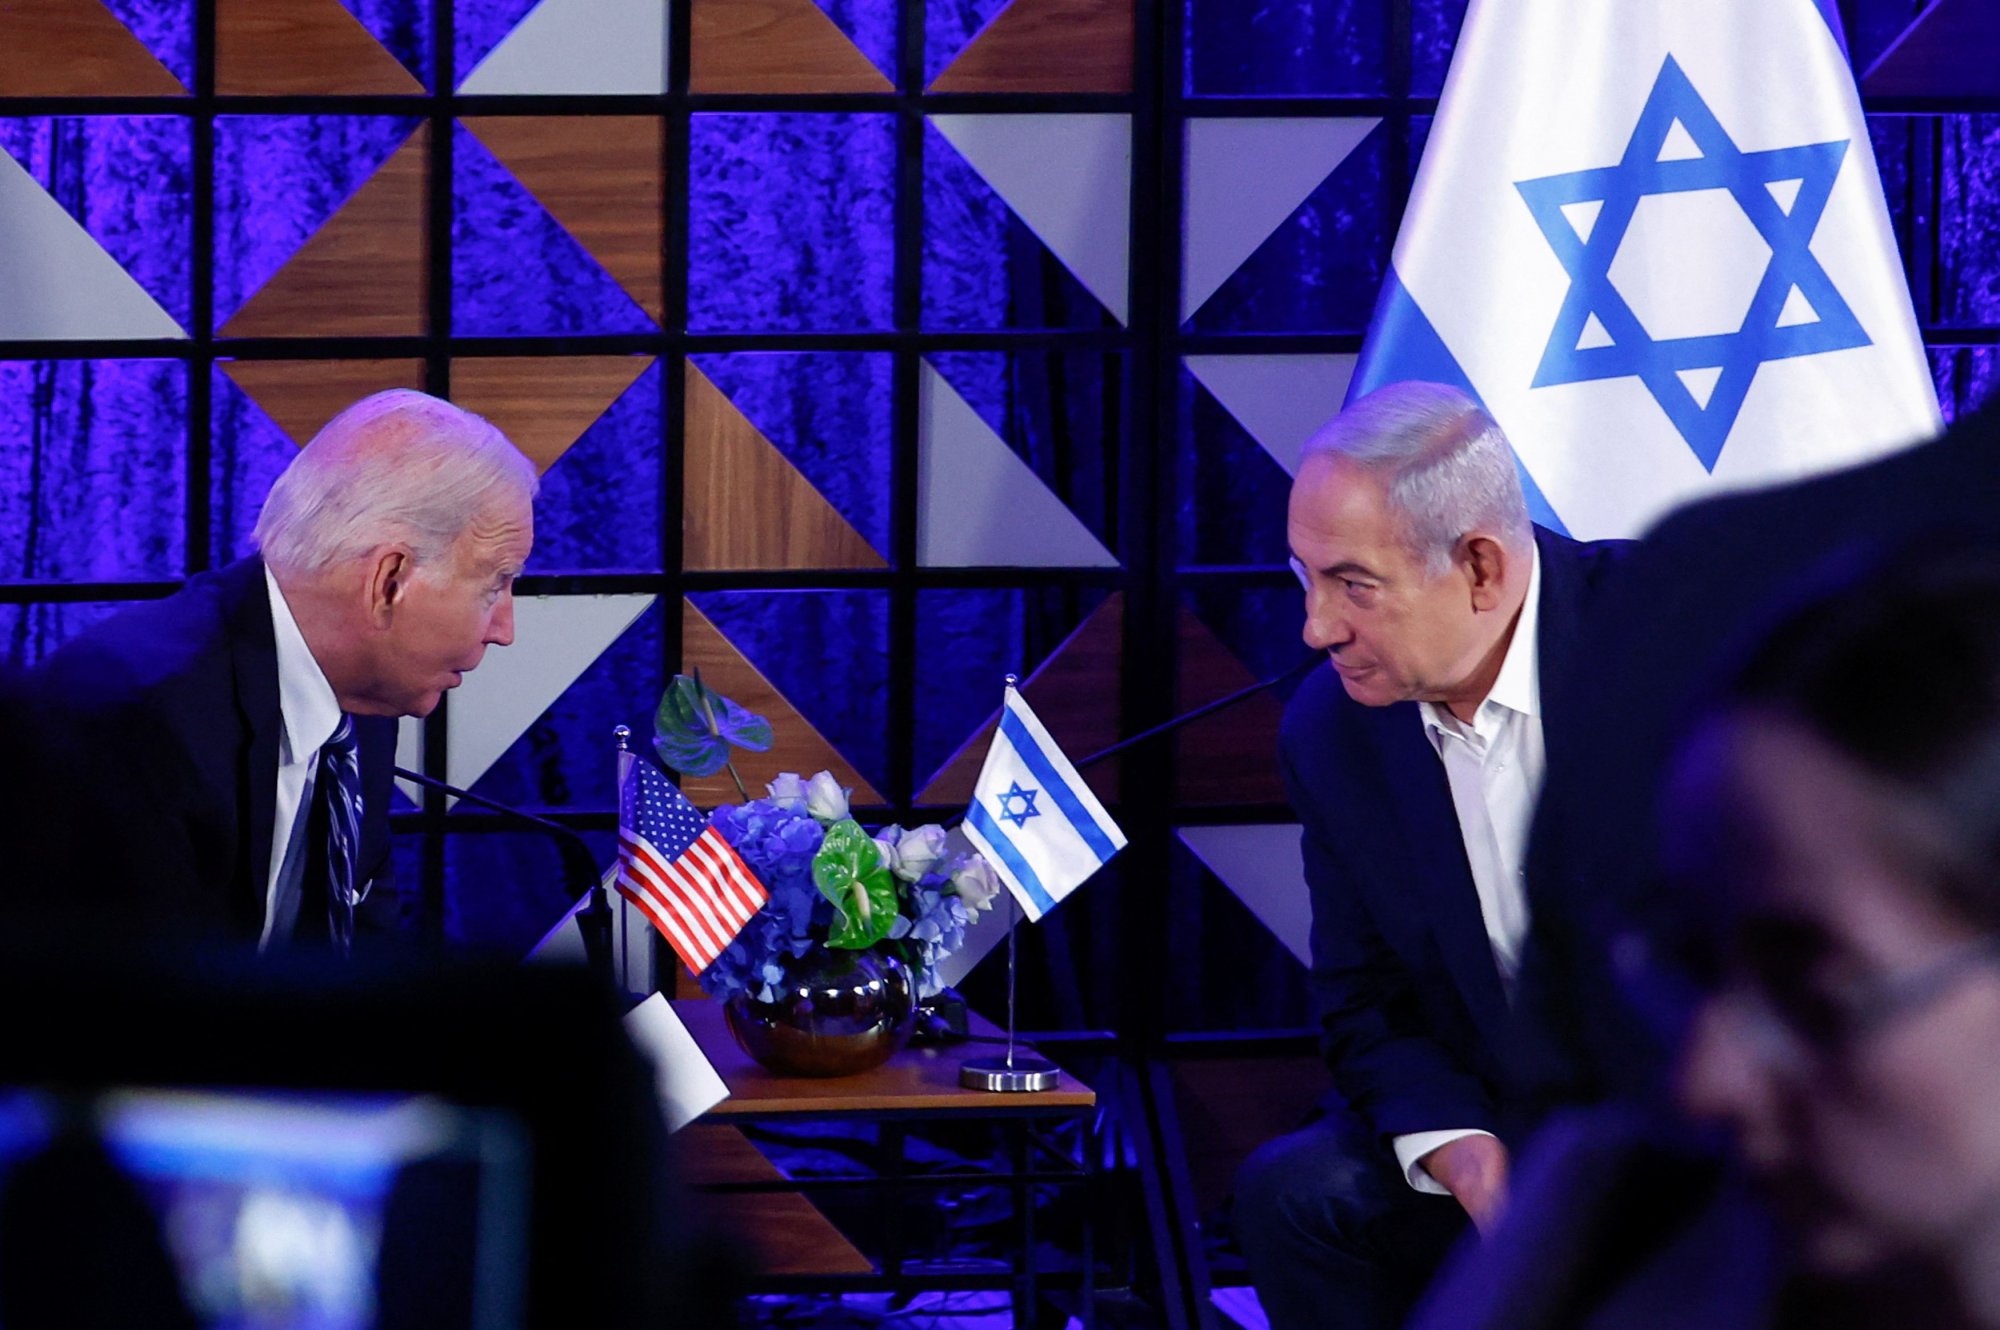 Πόλεμος Ισραήλ - Χαμάς: «Ο Μπάιντεν δεν εμπιστεύεται τον Νετανιάχου» - Ο ρόλος επιτηρητή των ΗΠΑ